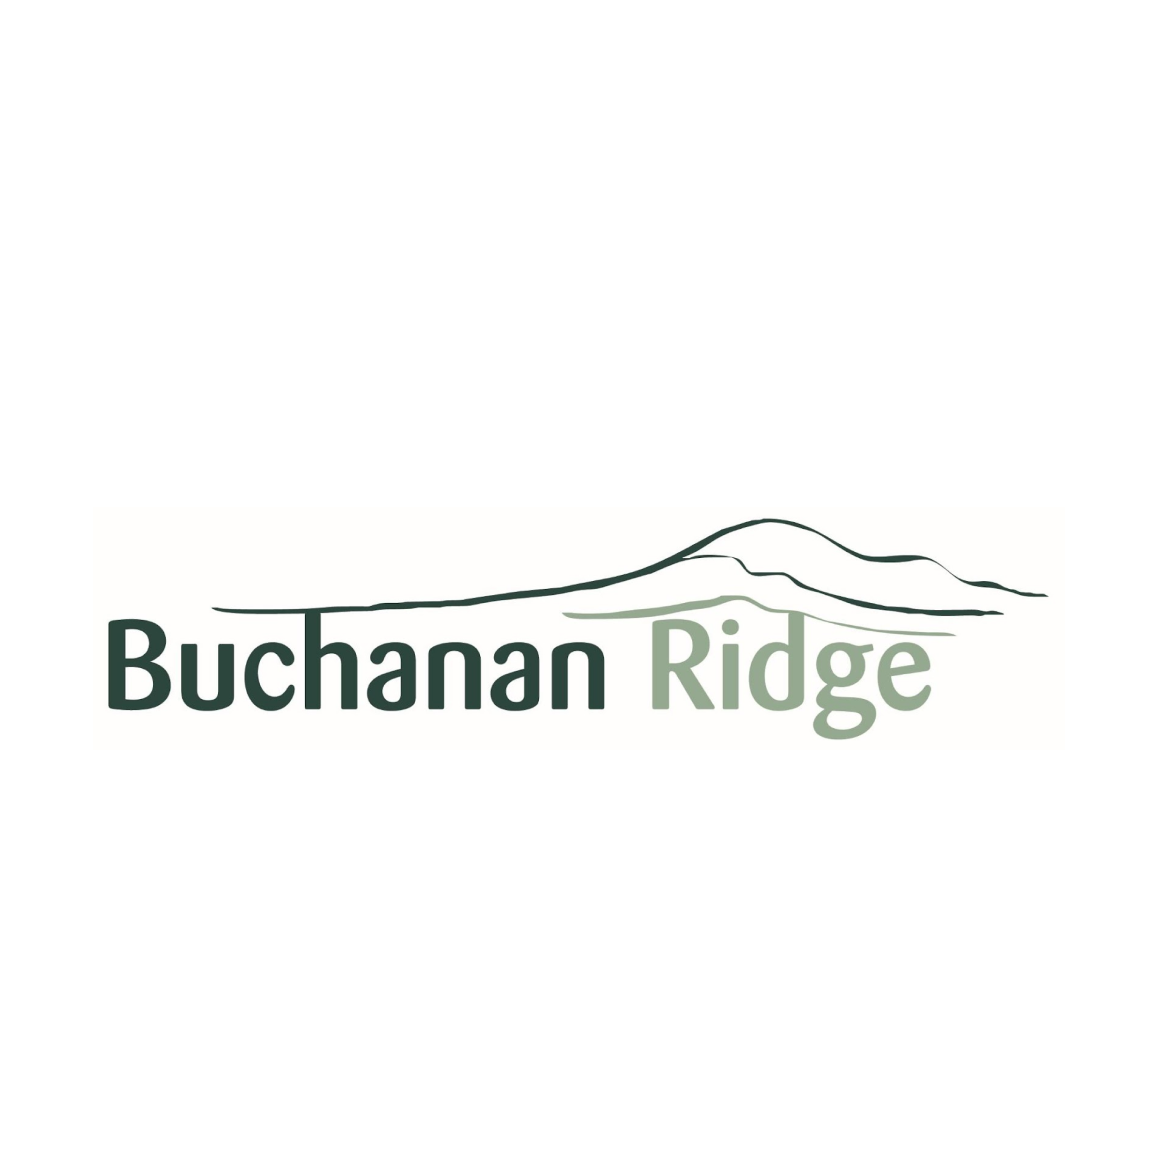 Buchanan Ridge